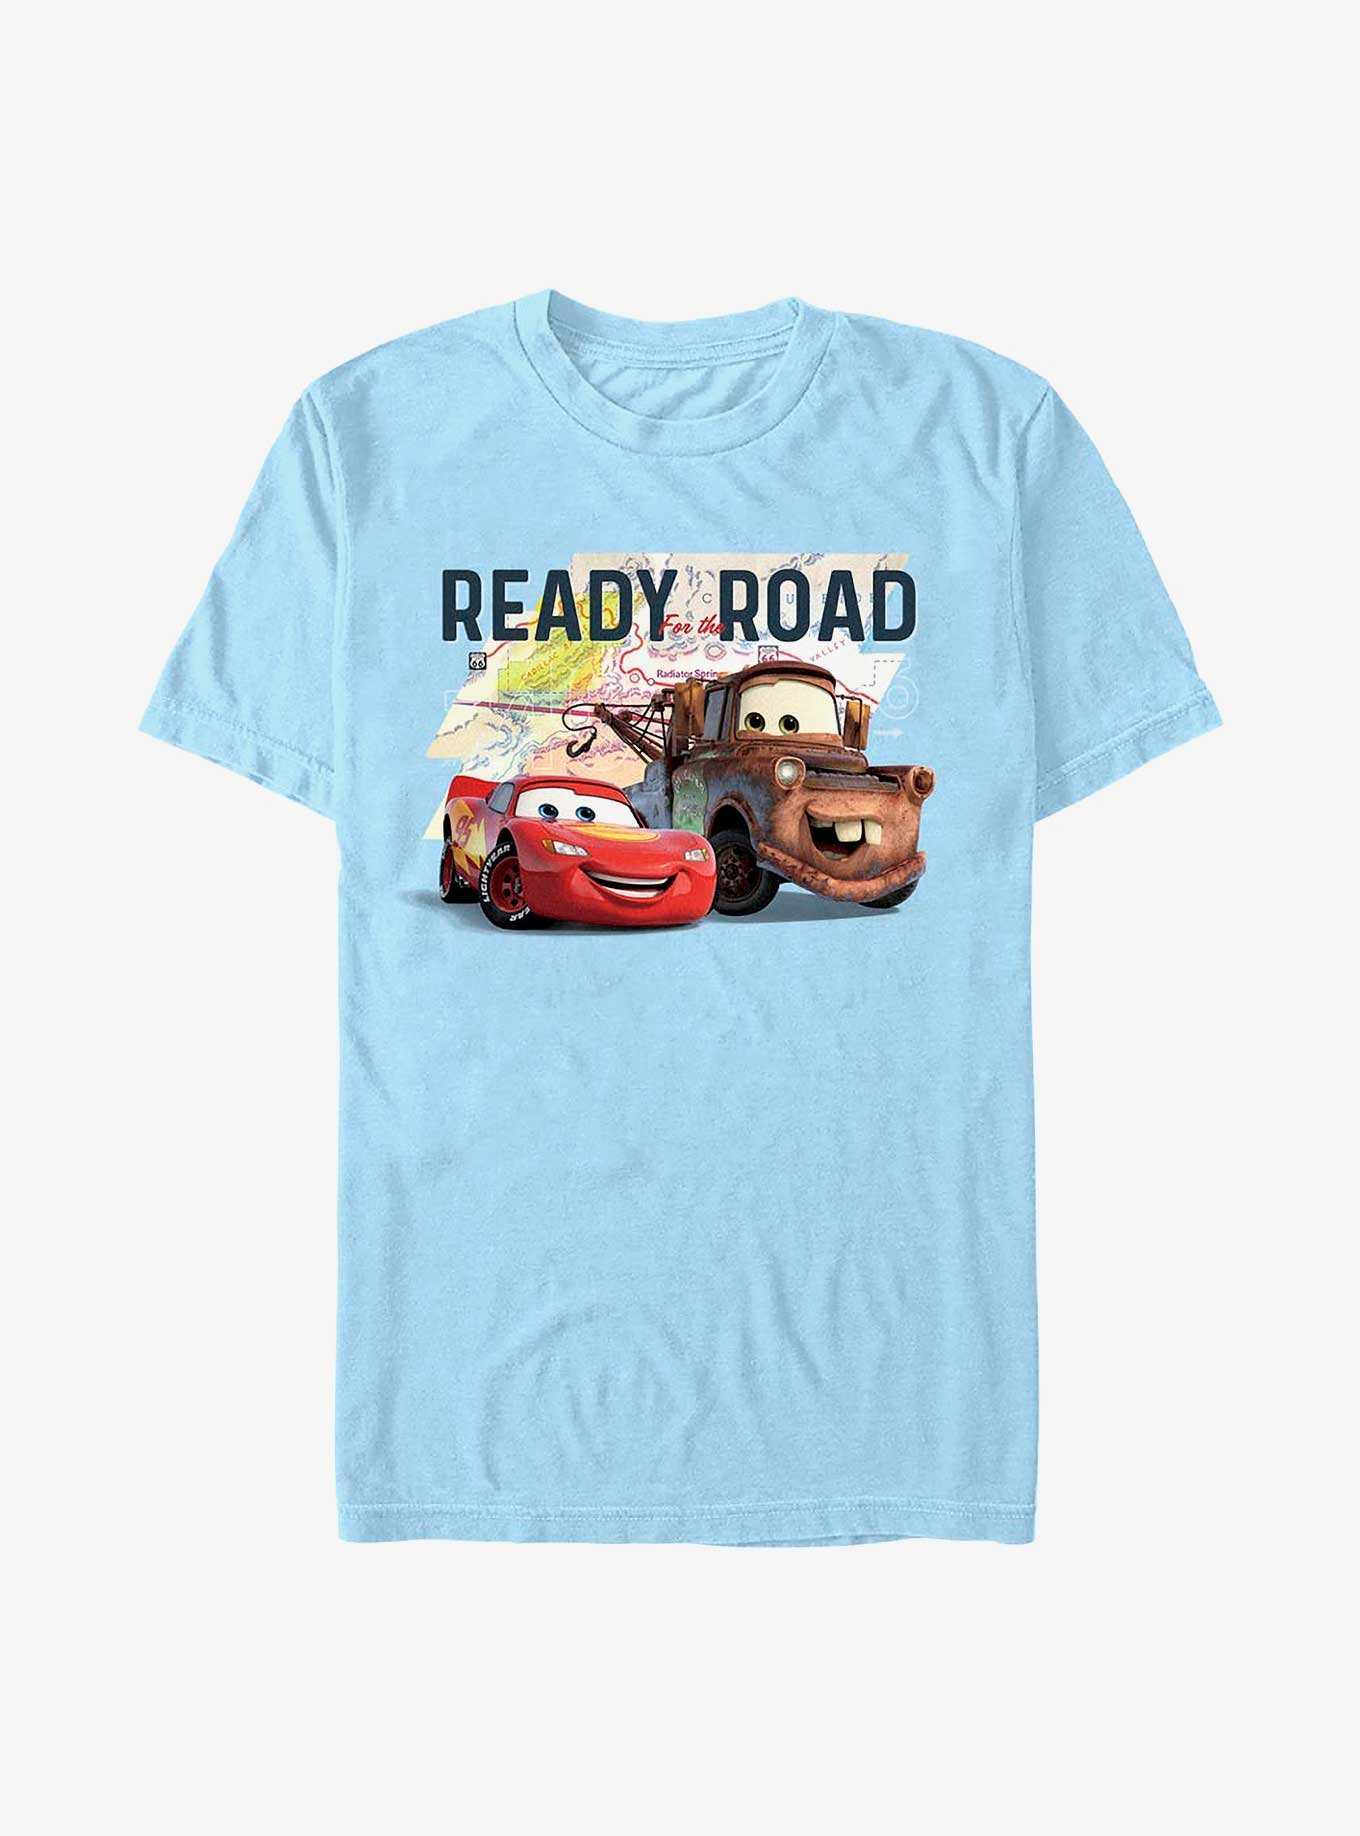 Disney Pixar Cars Ready Road T-Shirt, , hi-res